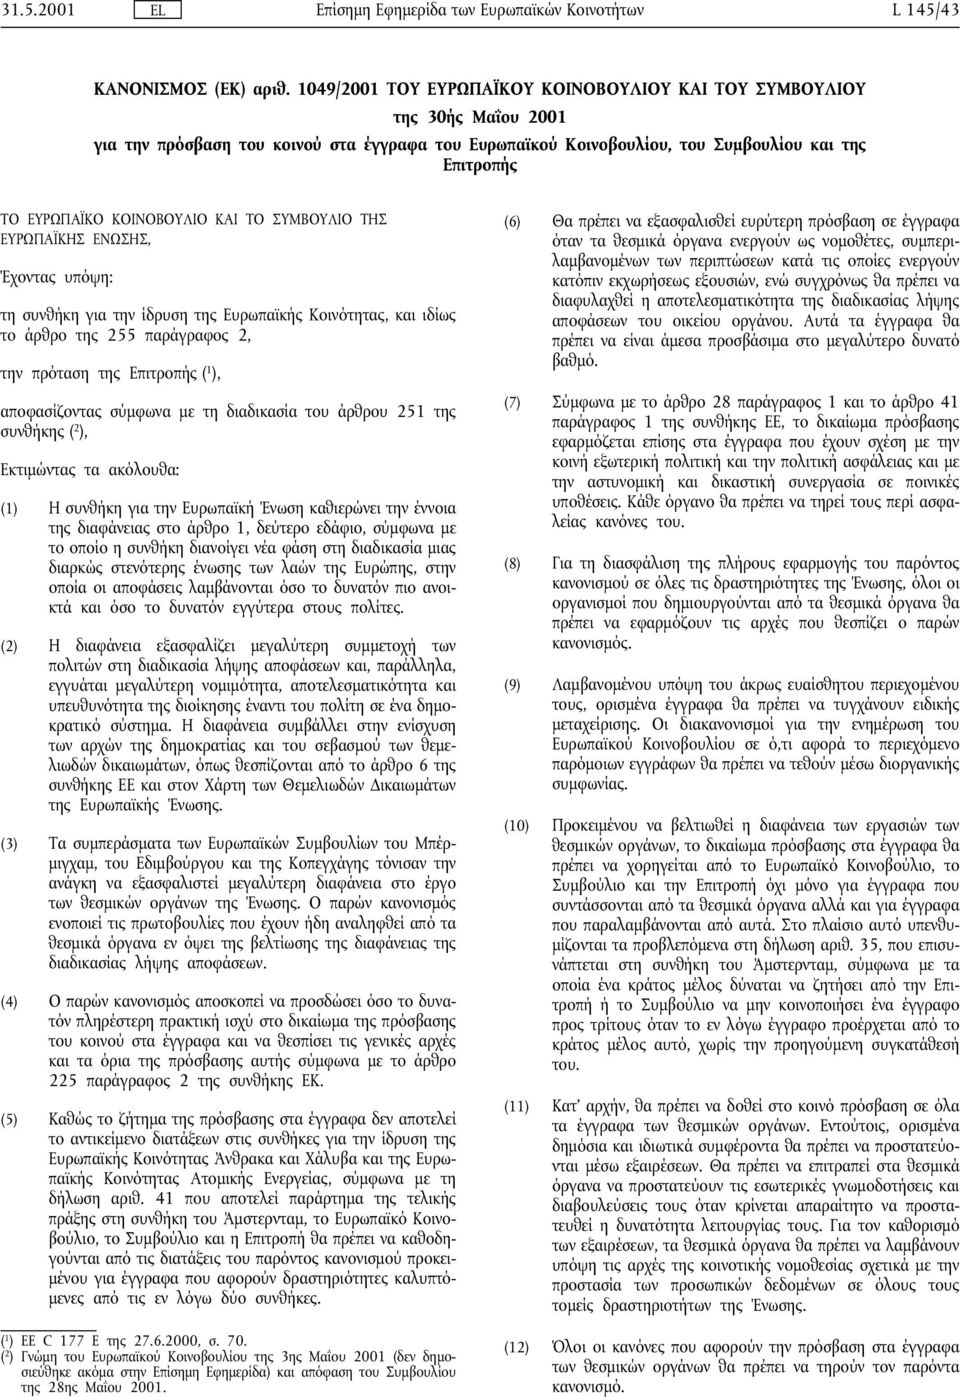 ΚΟΙΝΟΒΟΥΛΙΟ ΚΑΙ ΤΟ ΣΥΜΒΟΥΛΙΟ ΤΗΣ ΕΥΡΩΠΑΪΚΗΣ ΕΝΩΣΗΣ, Έχοντας υπόψη: τη συνθήκη για την ίδρυση της Ευρωπαϊκής Κοινότητας, και ιδίως το άρθρο της 255 παράγραφος 2, την πρόταση της Επιτροπής ( 1 ),